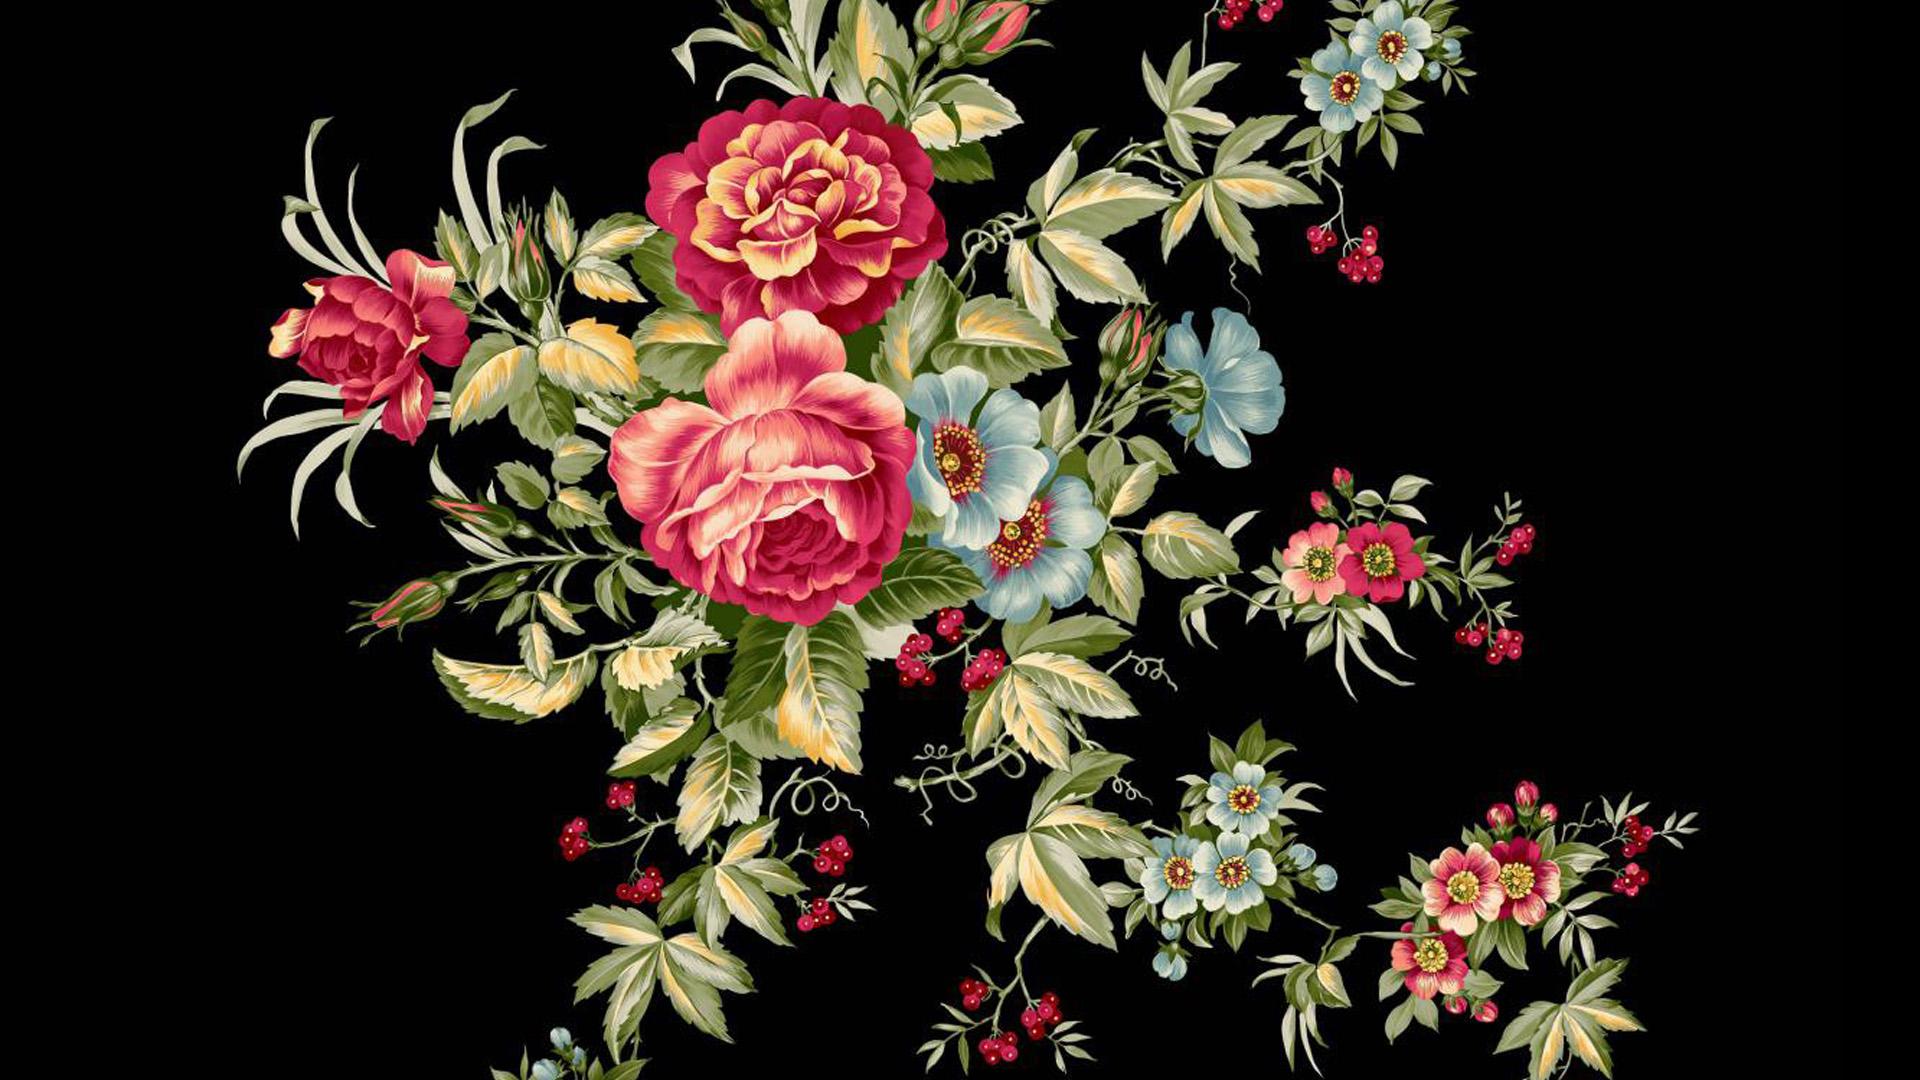 Vintage Rose Design HD Wallpaper. Background Image